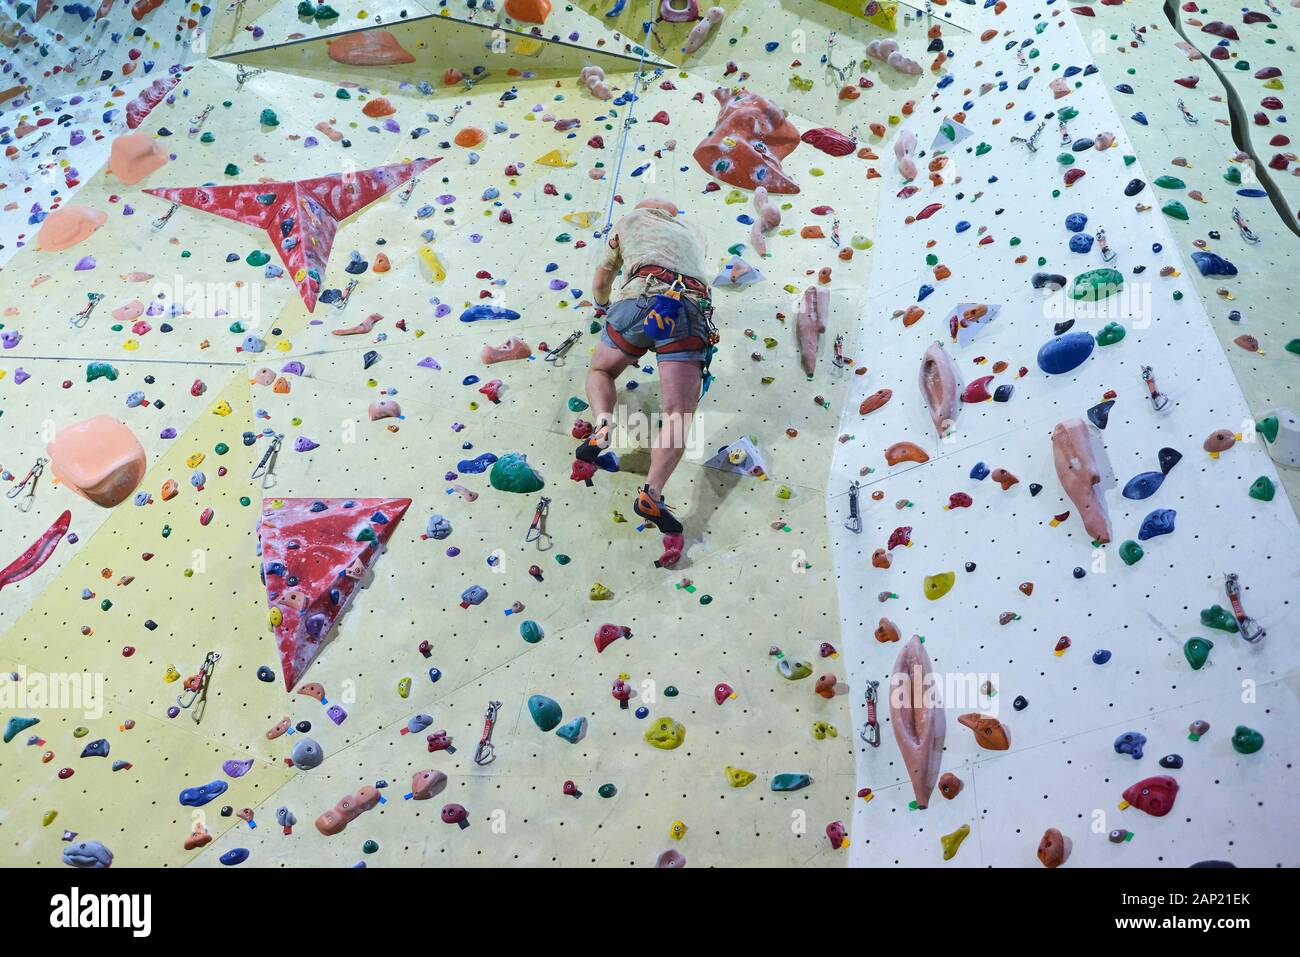 Mann Kletterwand in Boulderhalle. Details zu Beinen und Ausrüstung Stockfoto